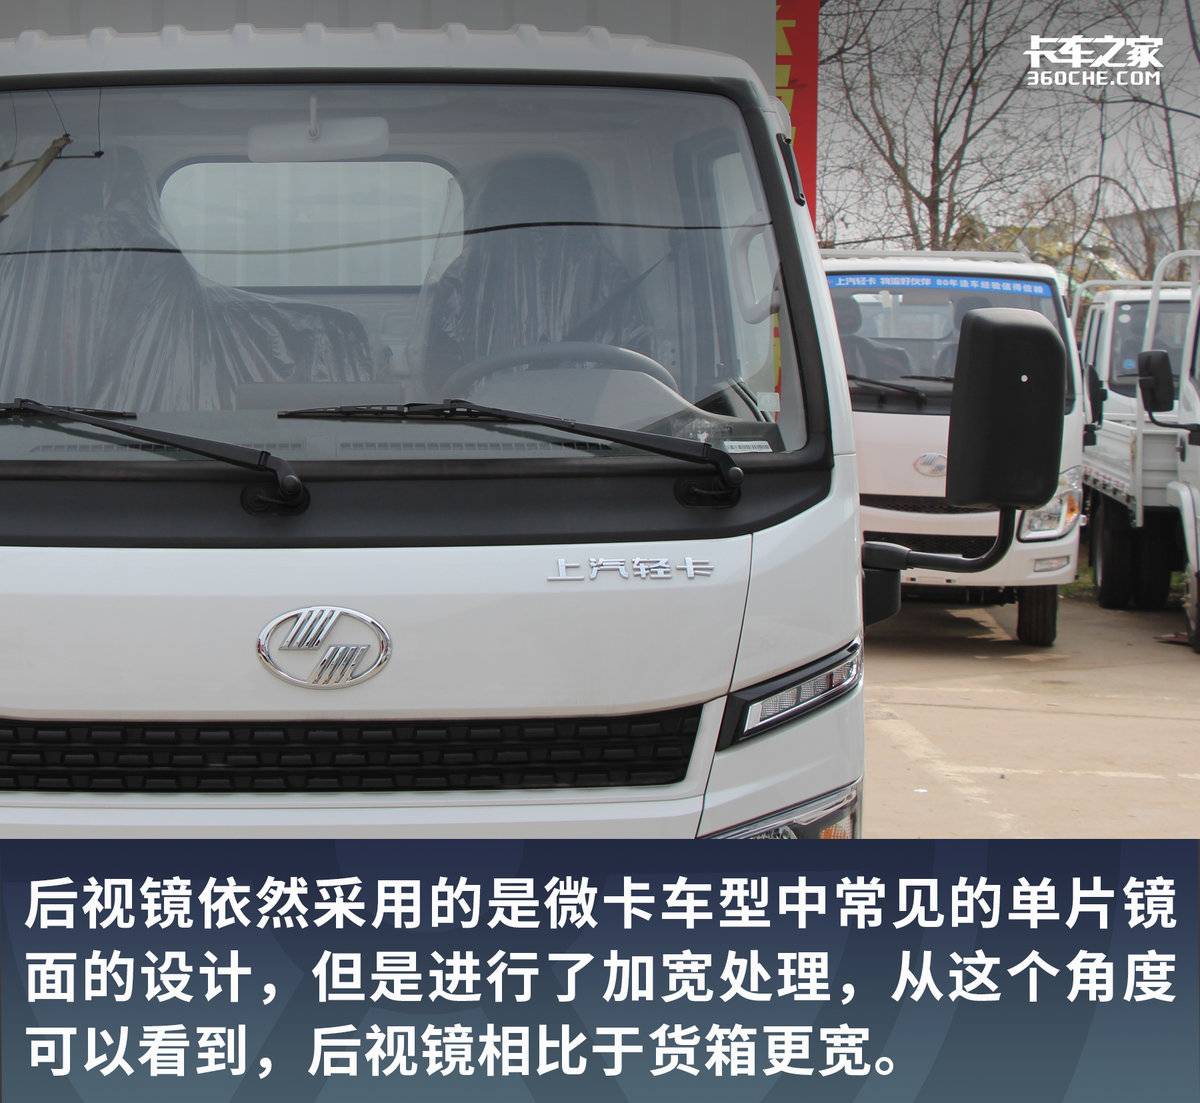 货箱长度4.17米合规装1.8吨 堪比标载轻卡 上汽轻卡S100报价7.11万